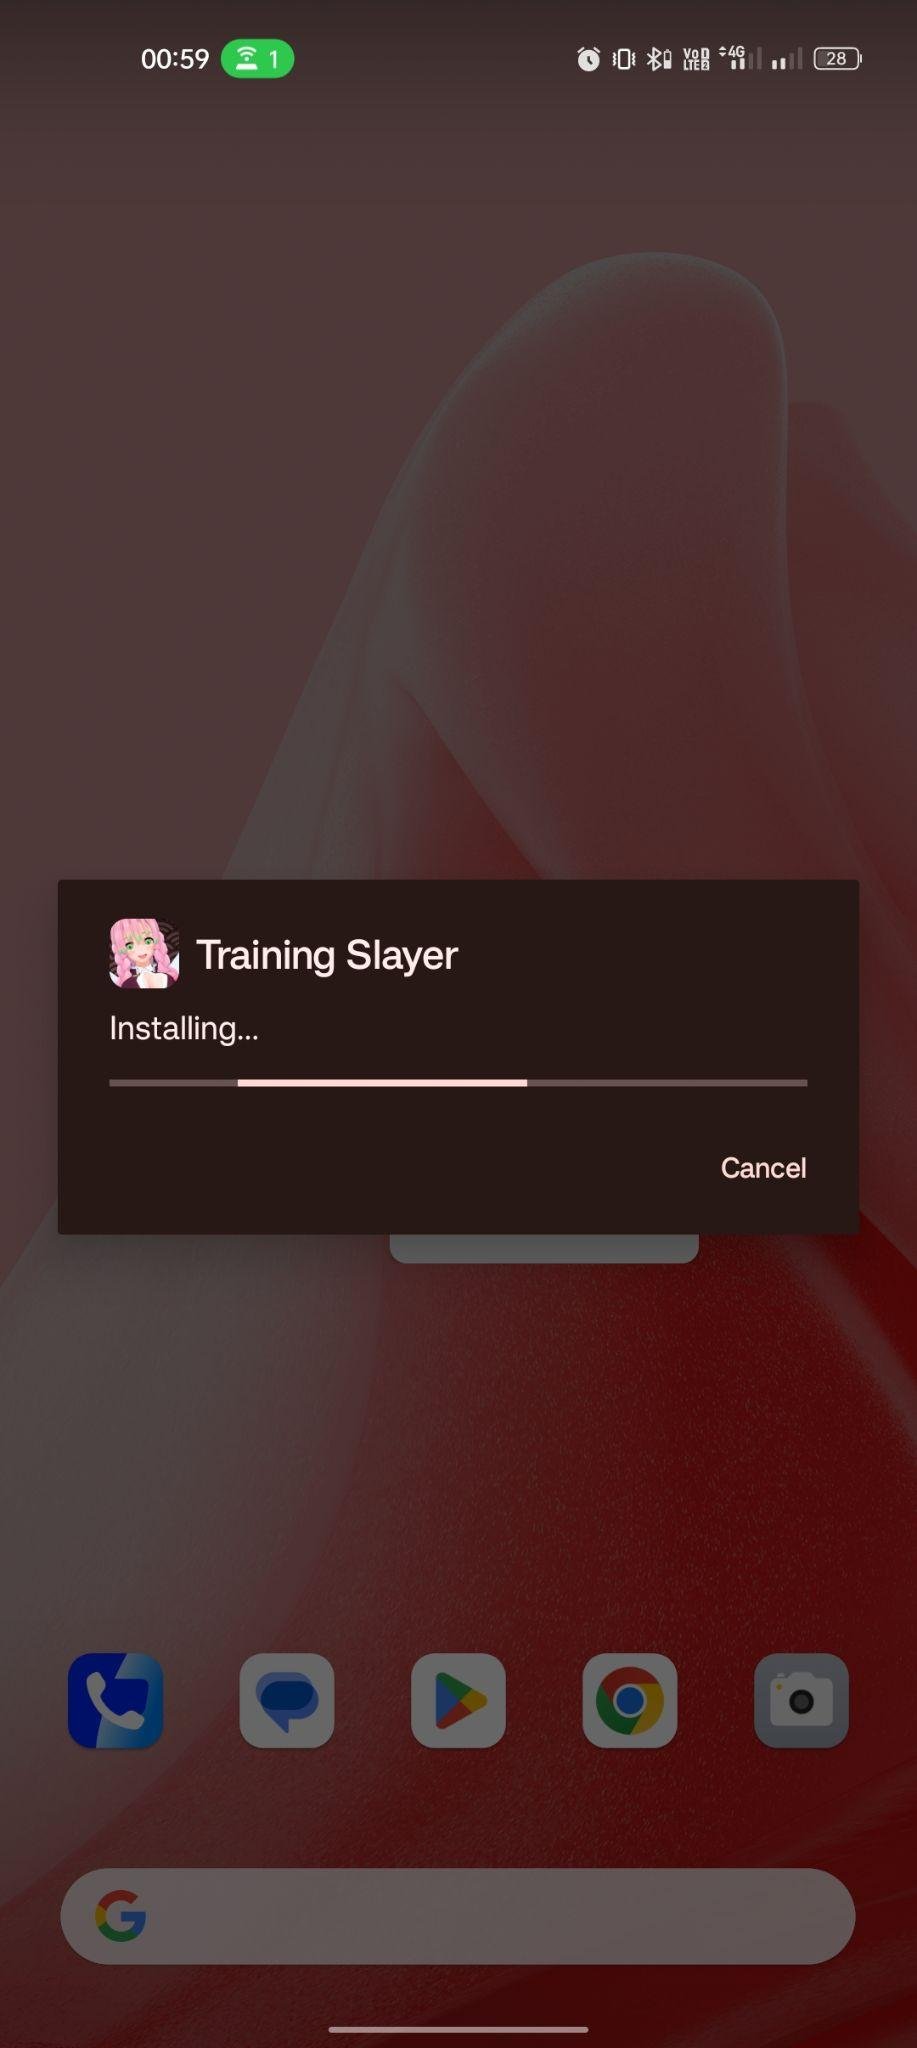 Training Slayer apk installing